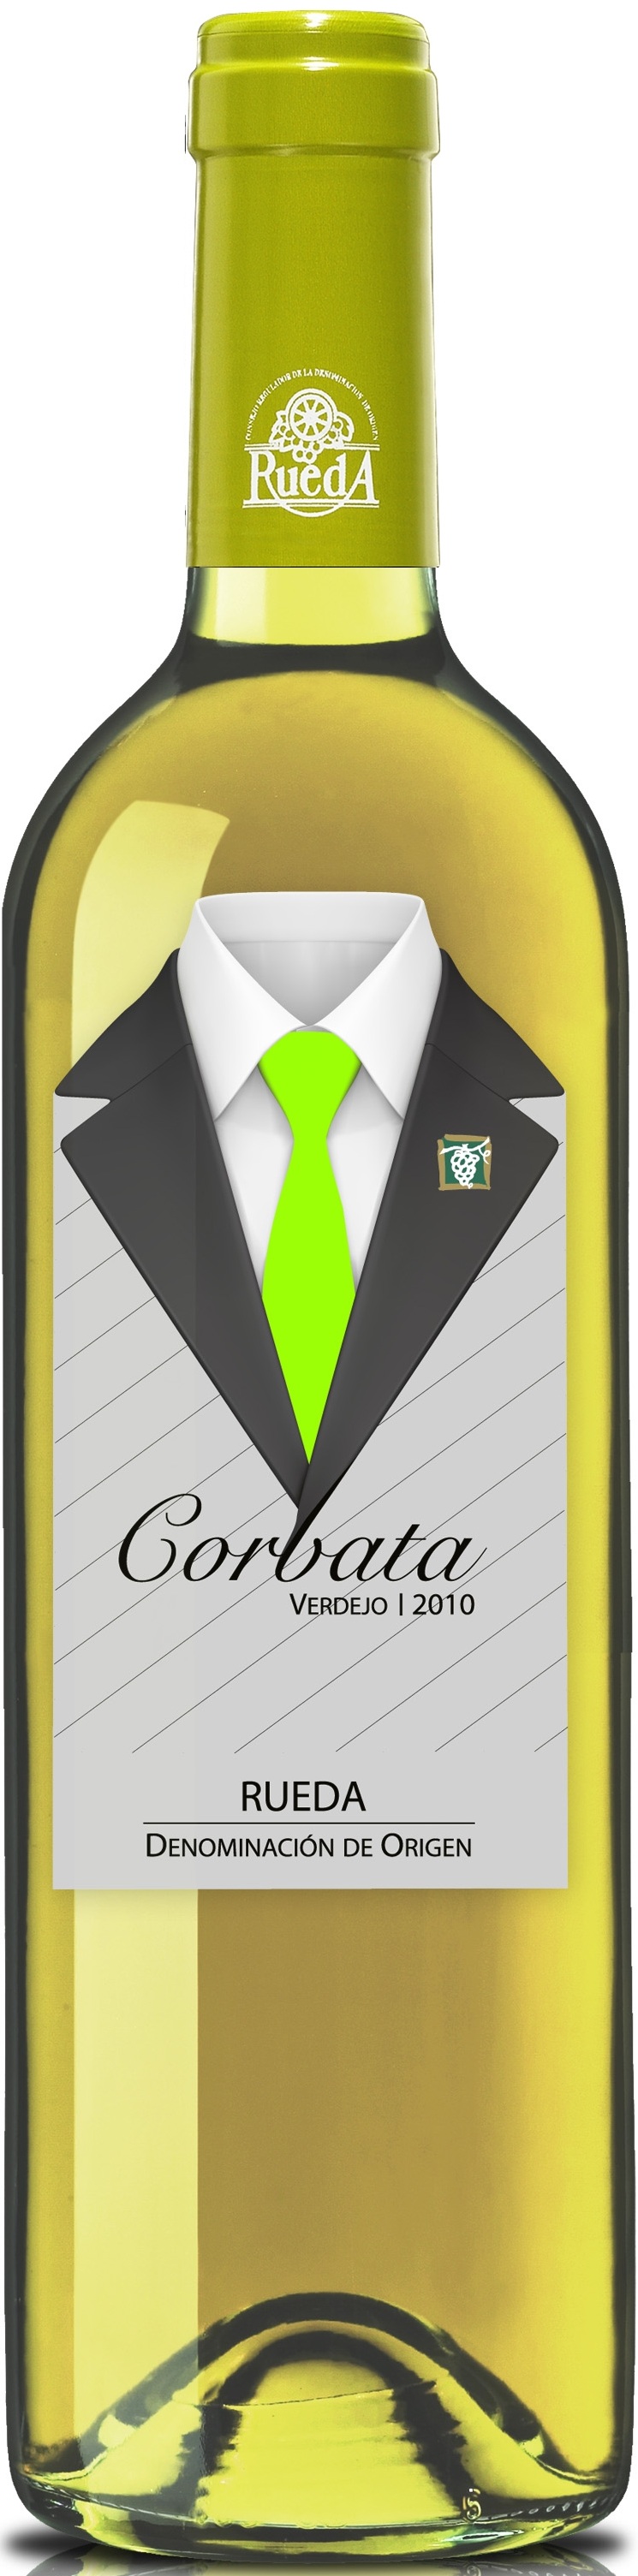 Image of Wine bottle Corbata Verdejo